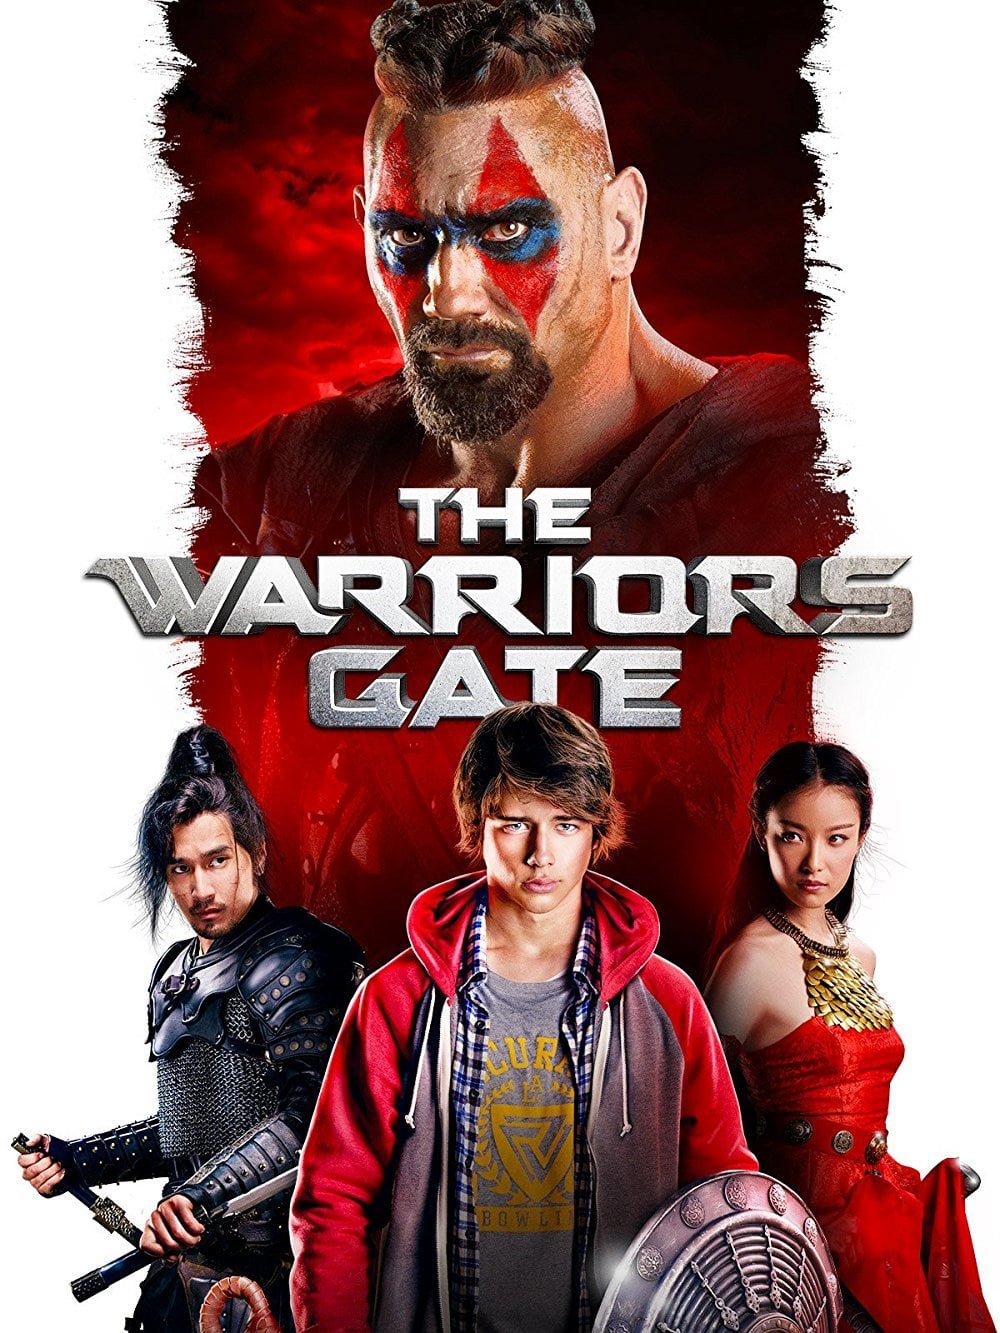 Plakat von "The Warriors Gate"